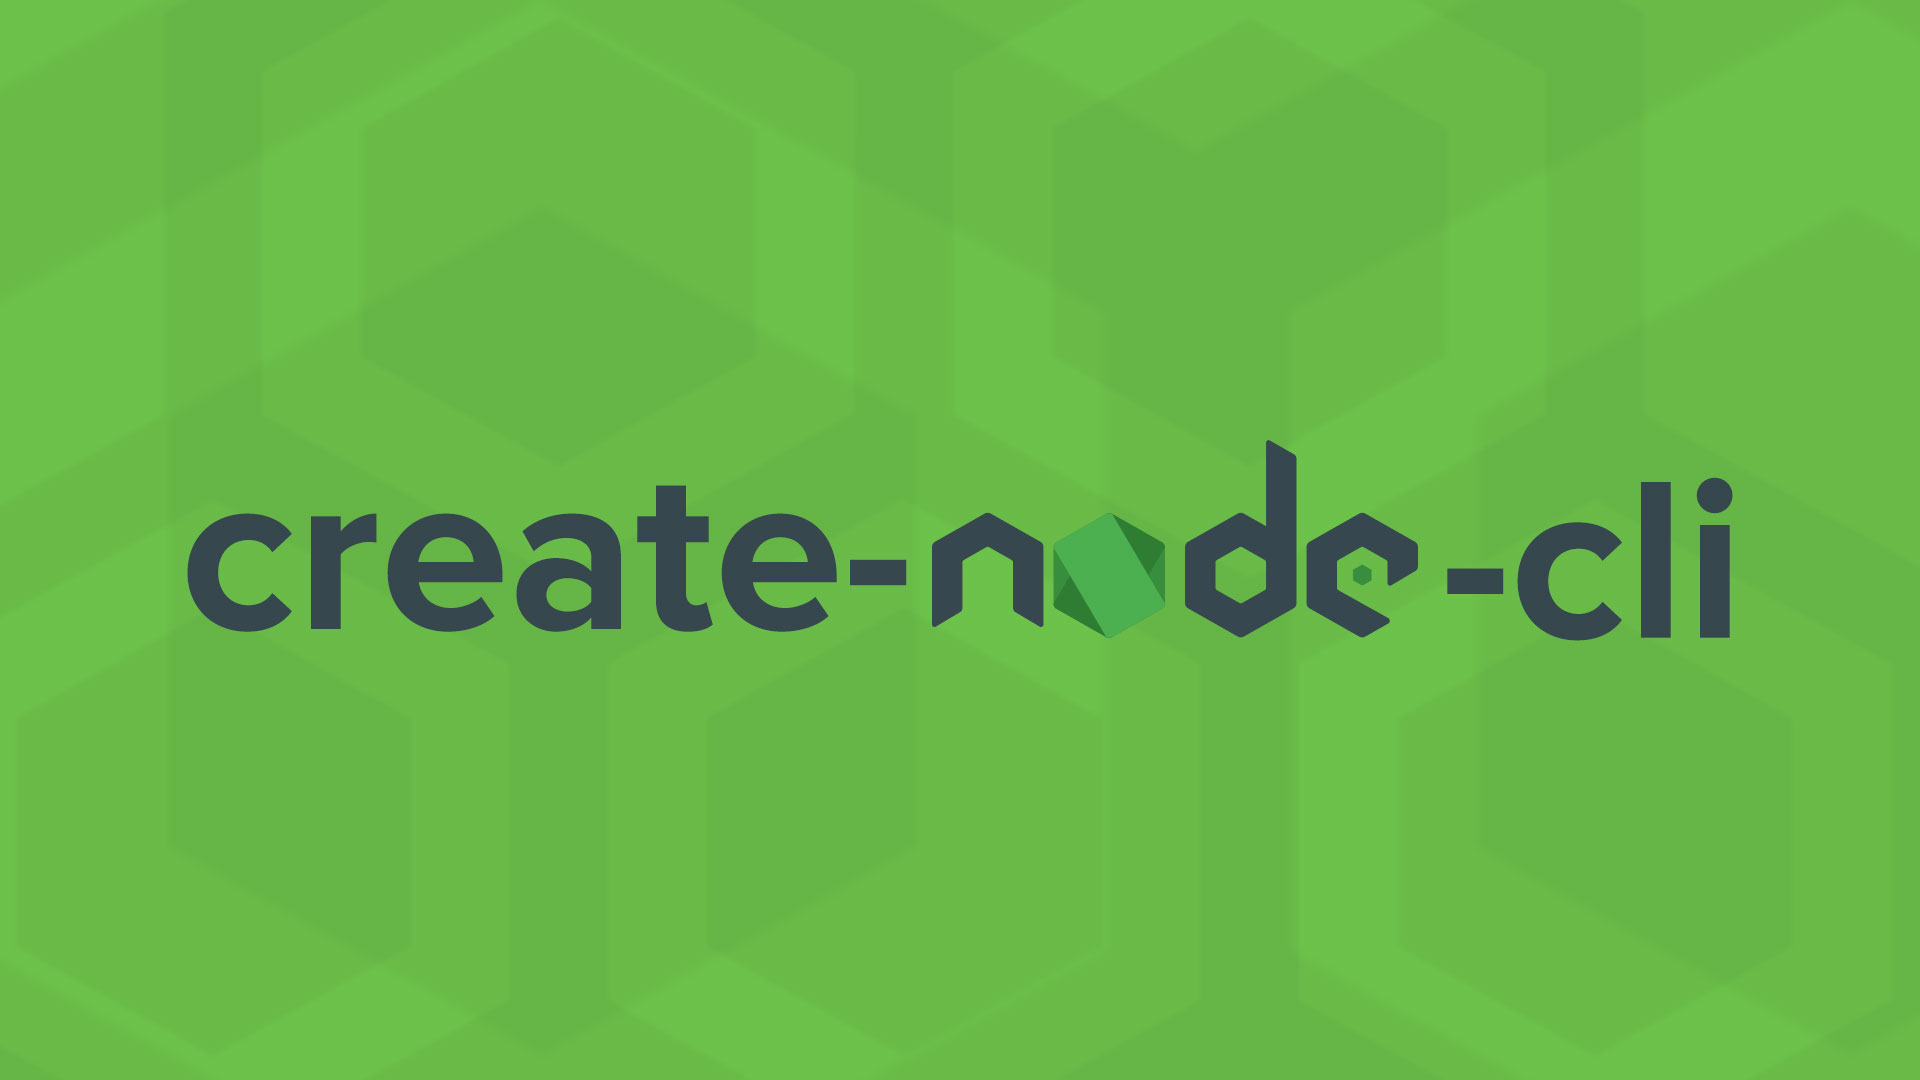 create-node-cli